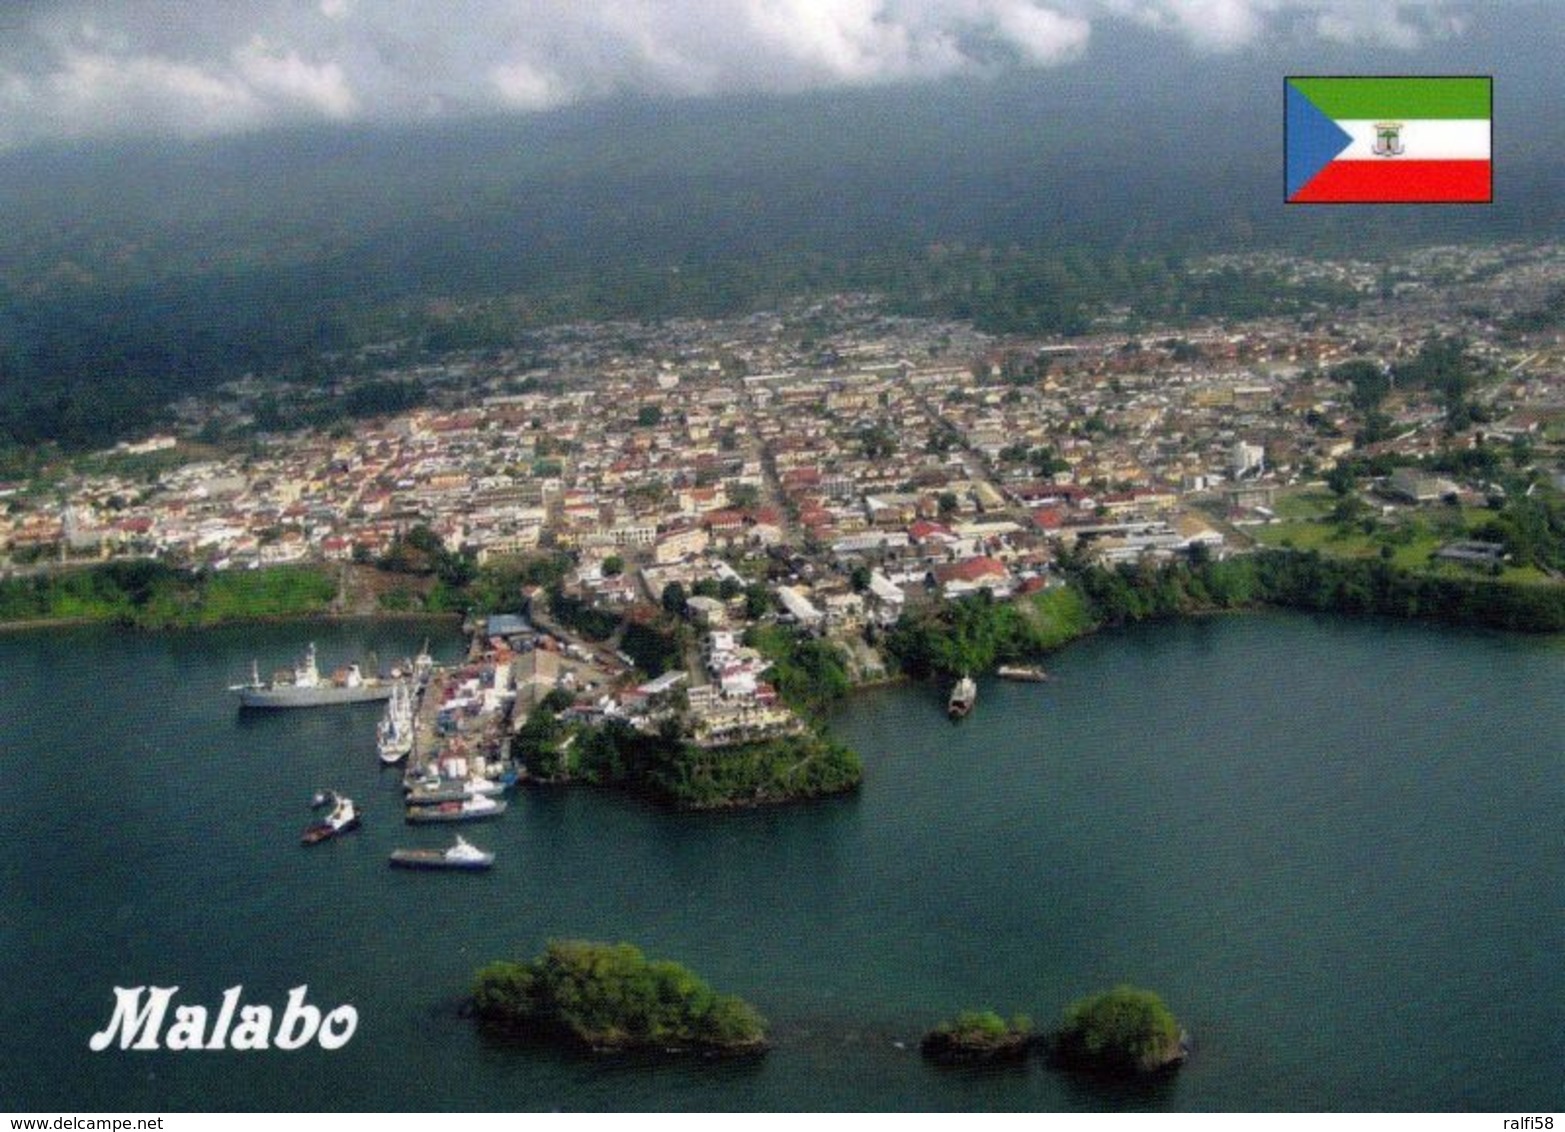 1 AK Äquatorial-Guinea * Blick Auf Die Hauptstadt Malabo, Sie Liegt An Der Nordküste Der Insel Bioko * - Äquatorial-Guinea